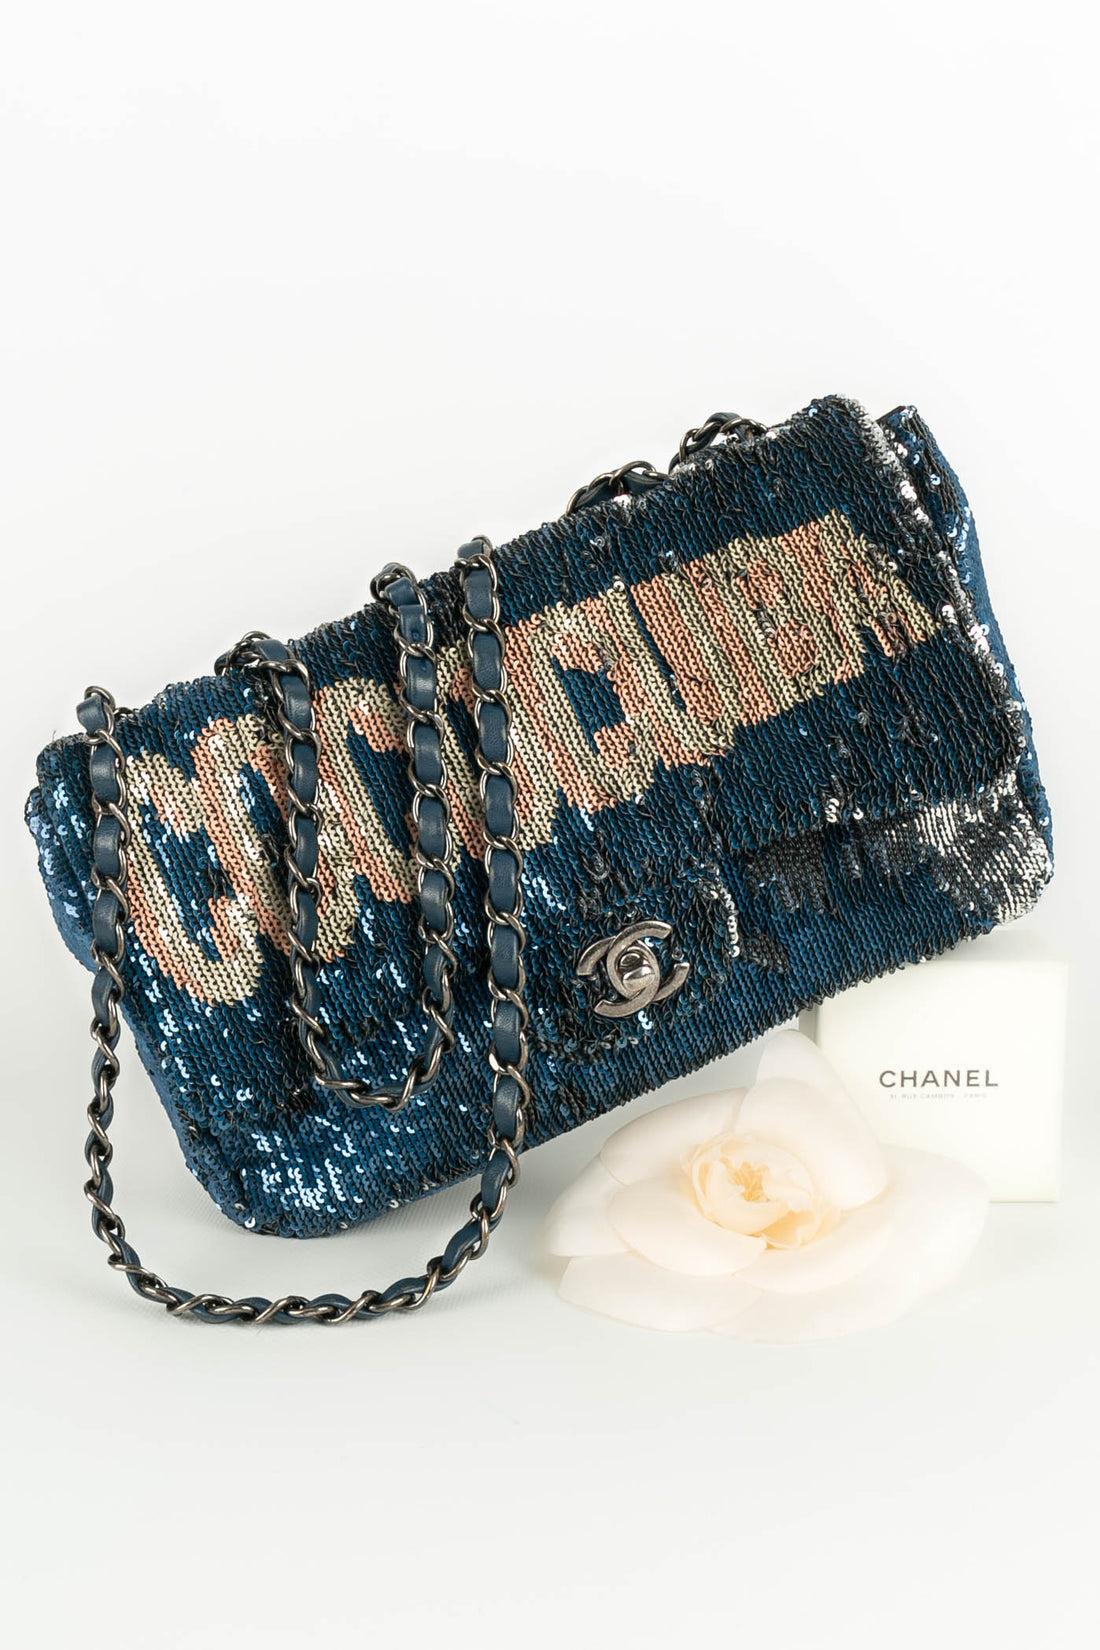 Chanel Blue Leather Bag Paris-Cuba, 2017 For Sale 11